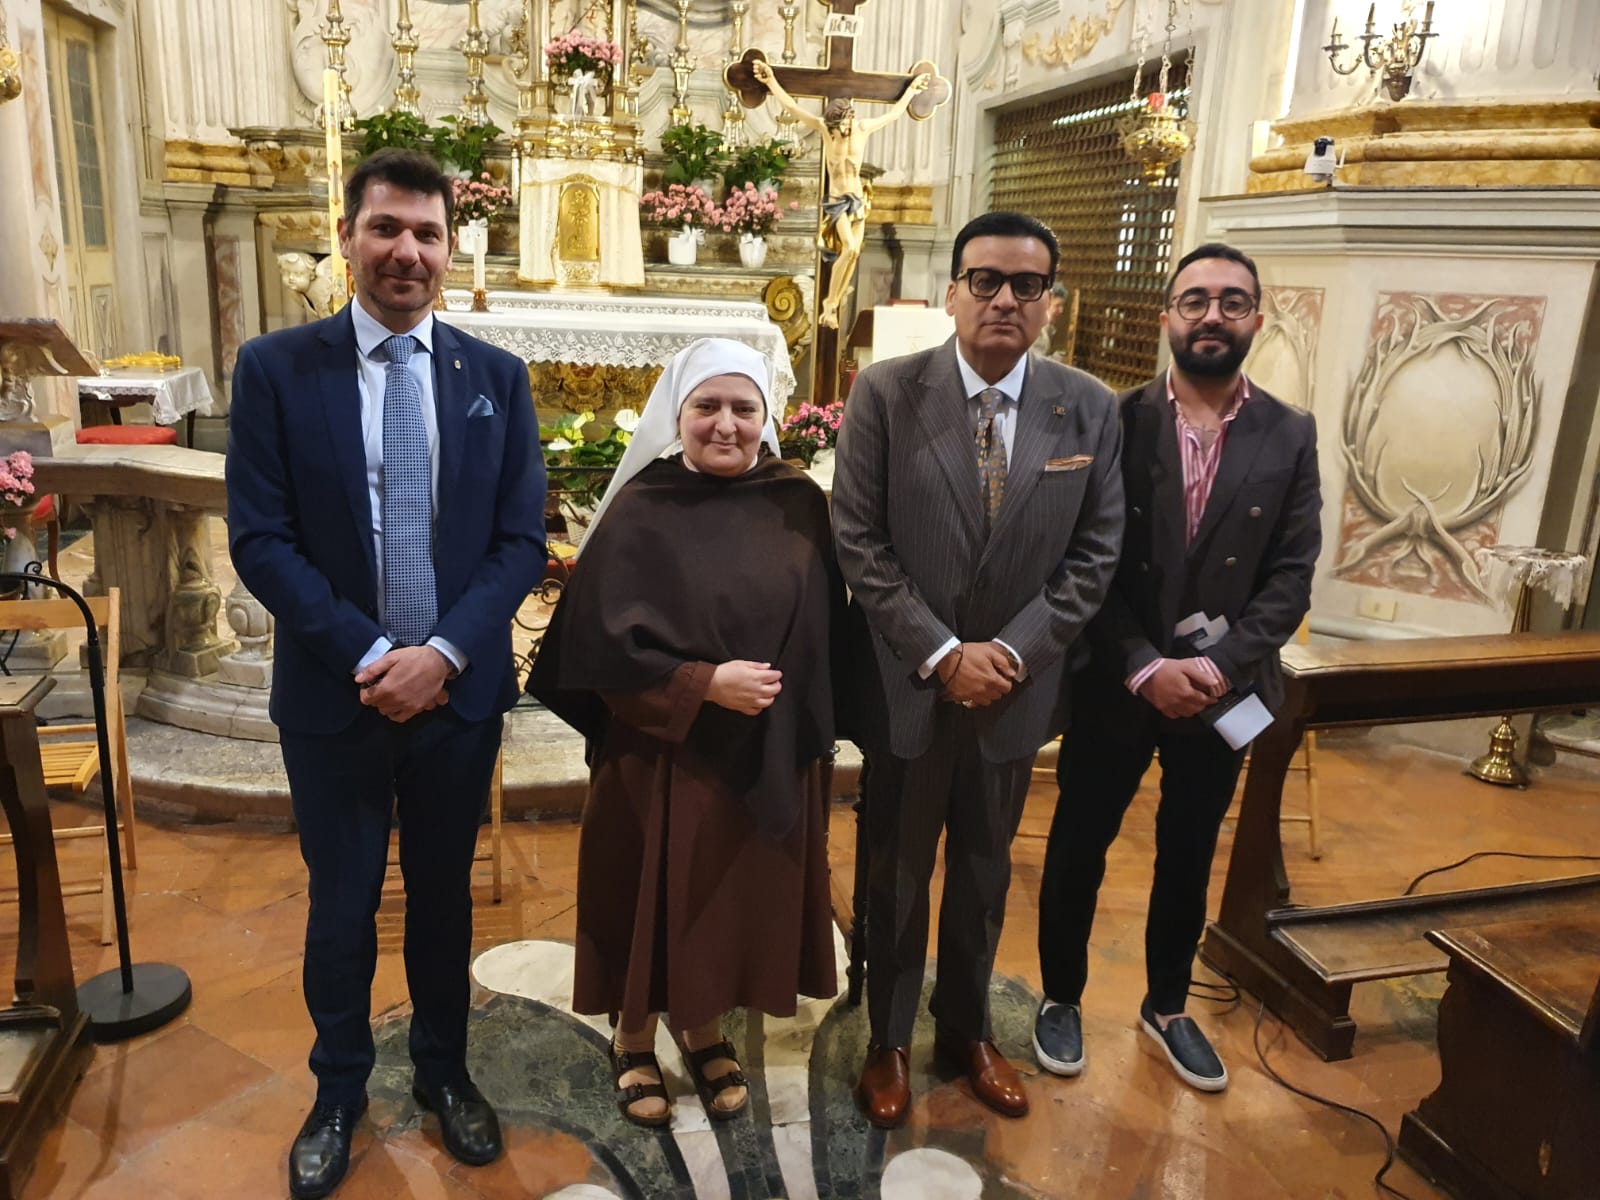 MONCALIERI – Due giorni dedicata al dialogo interreligioso tra cattolicesimo e islam